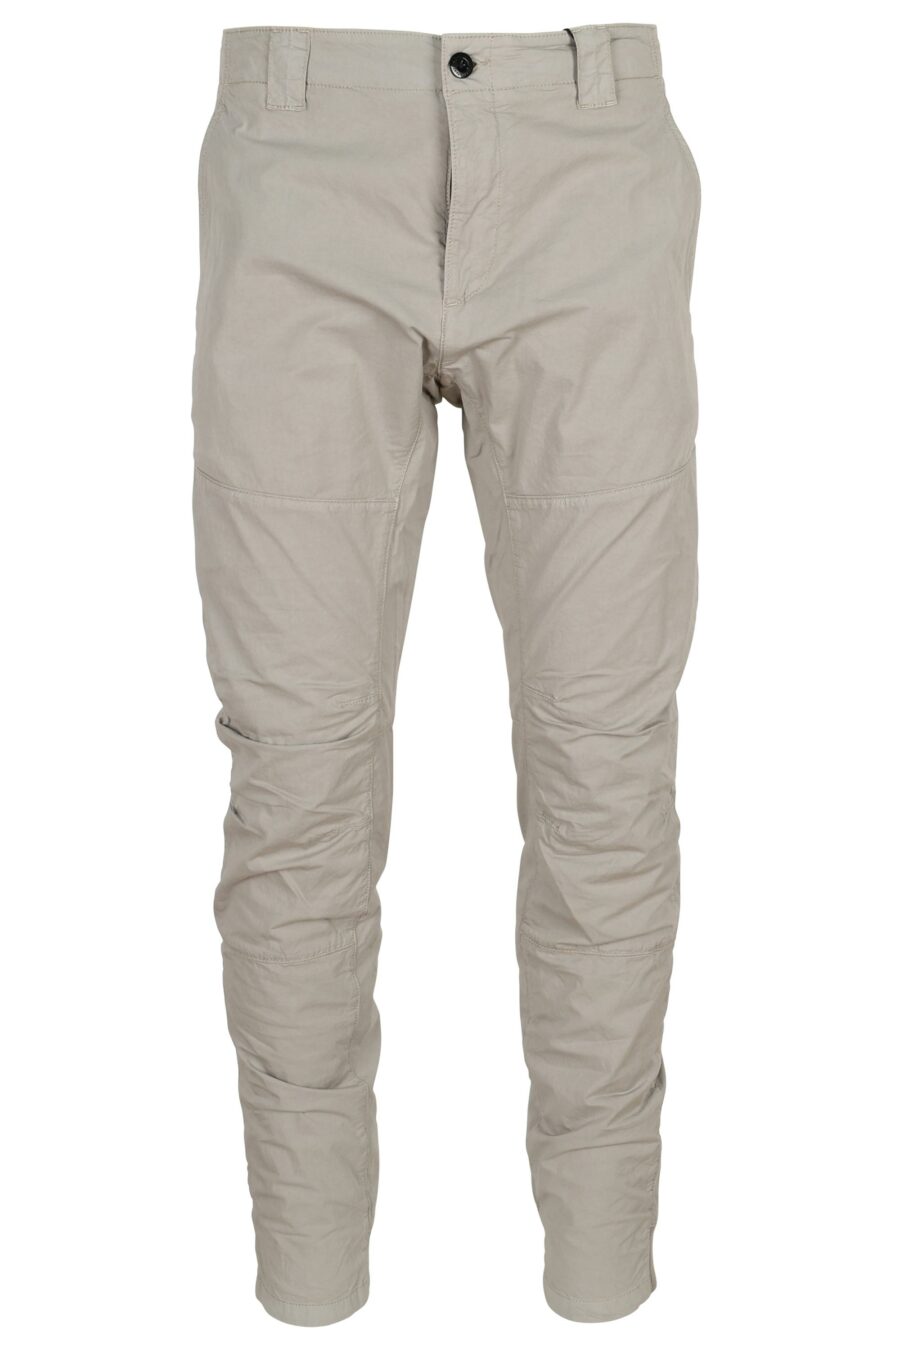 Pantalon ergonomique gris avec mini-logo - 7620943668377